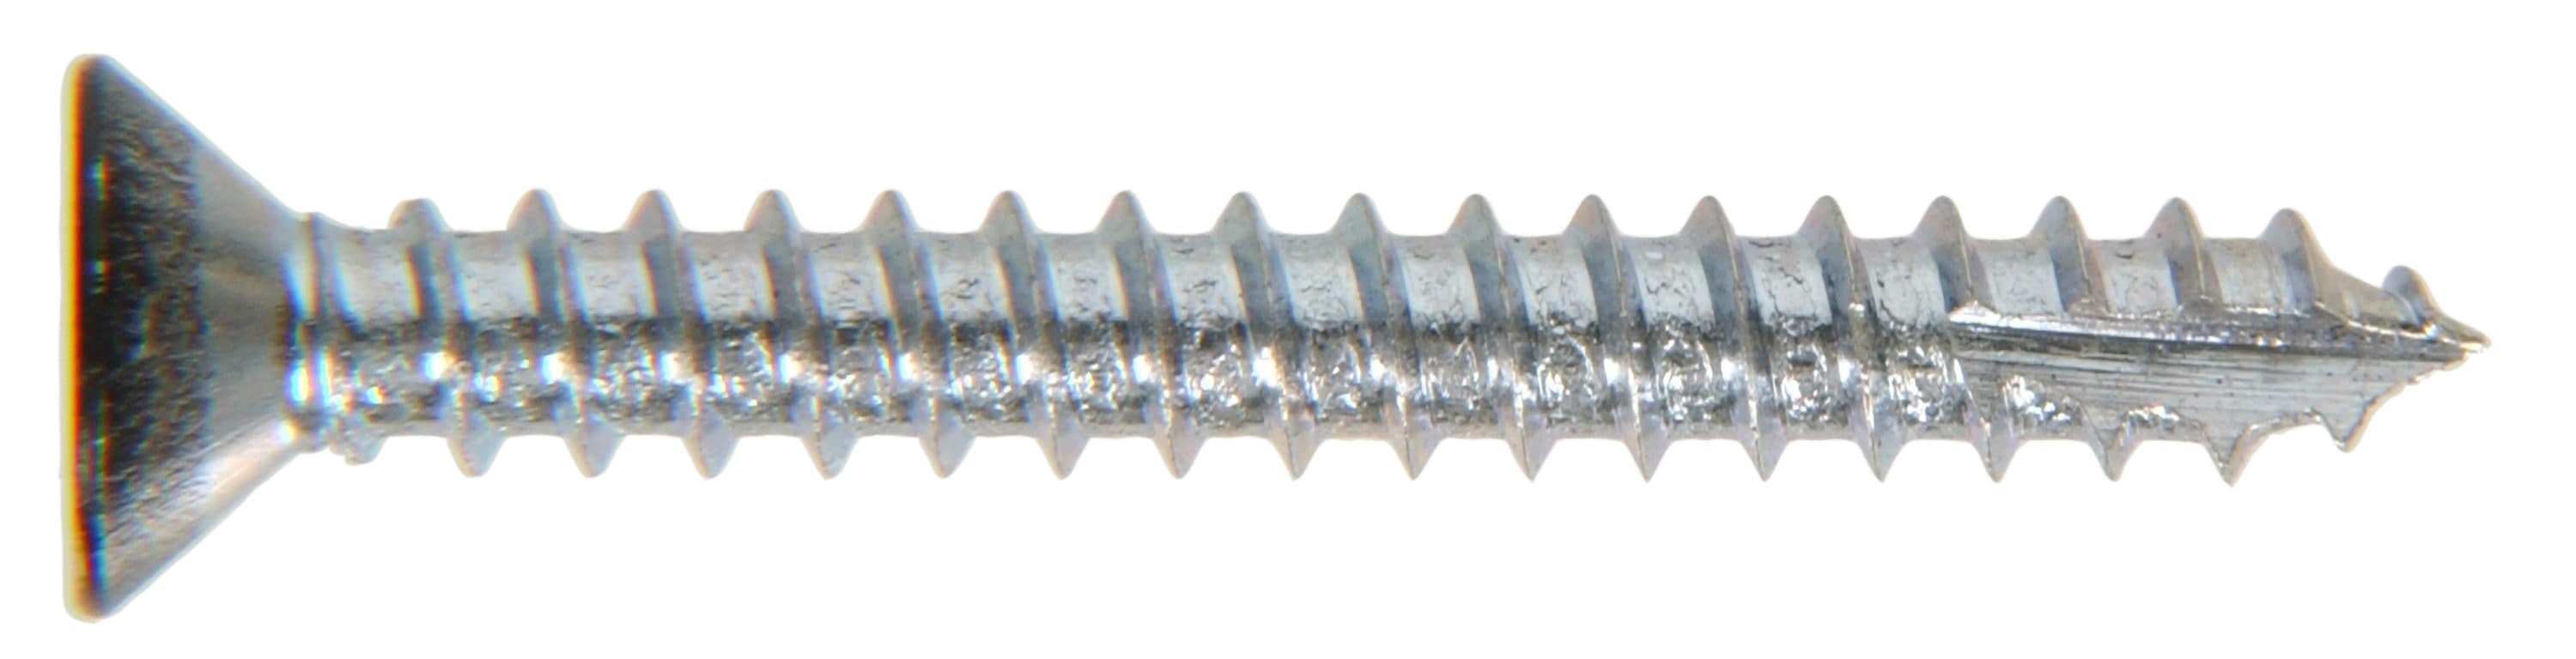 Repair Tool Chipboard Screws Screws Kit 1 Box Silver Multipurpose Timber Screw 